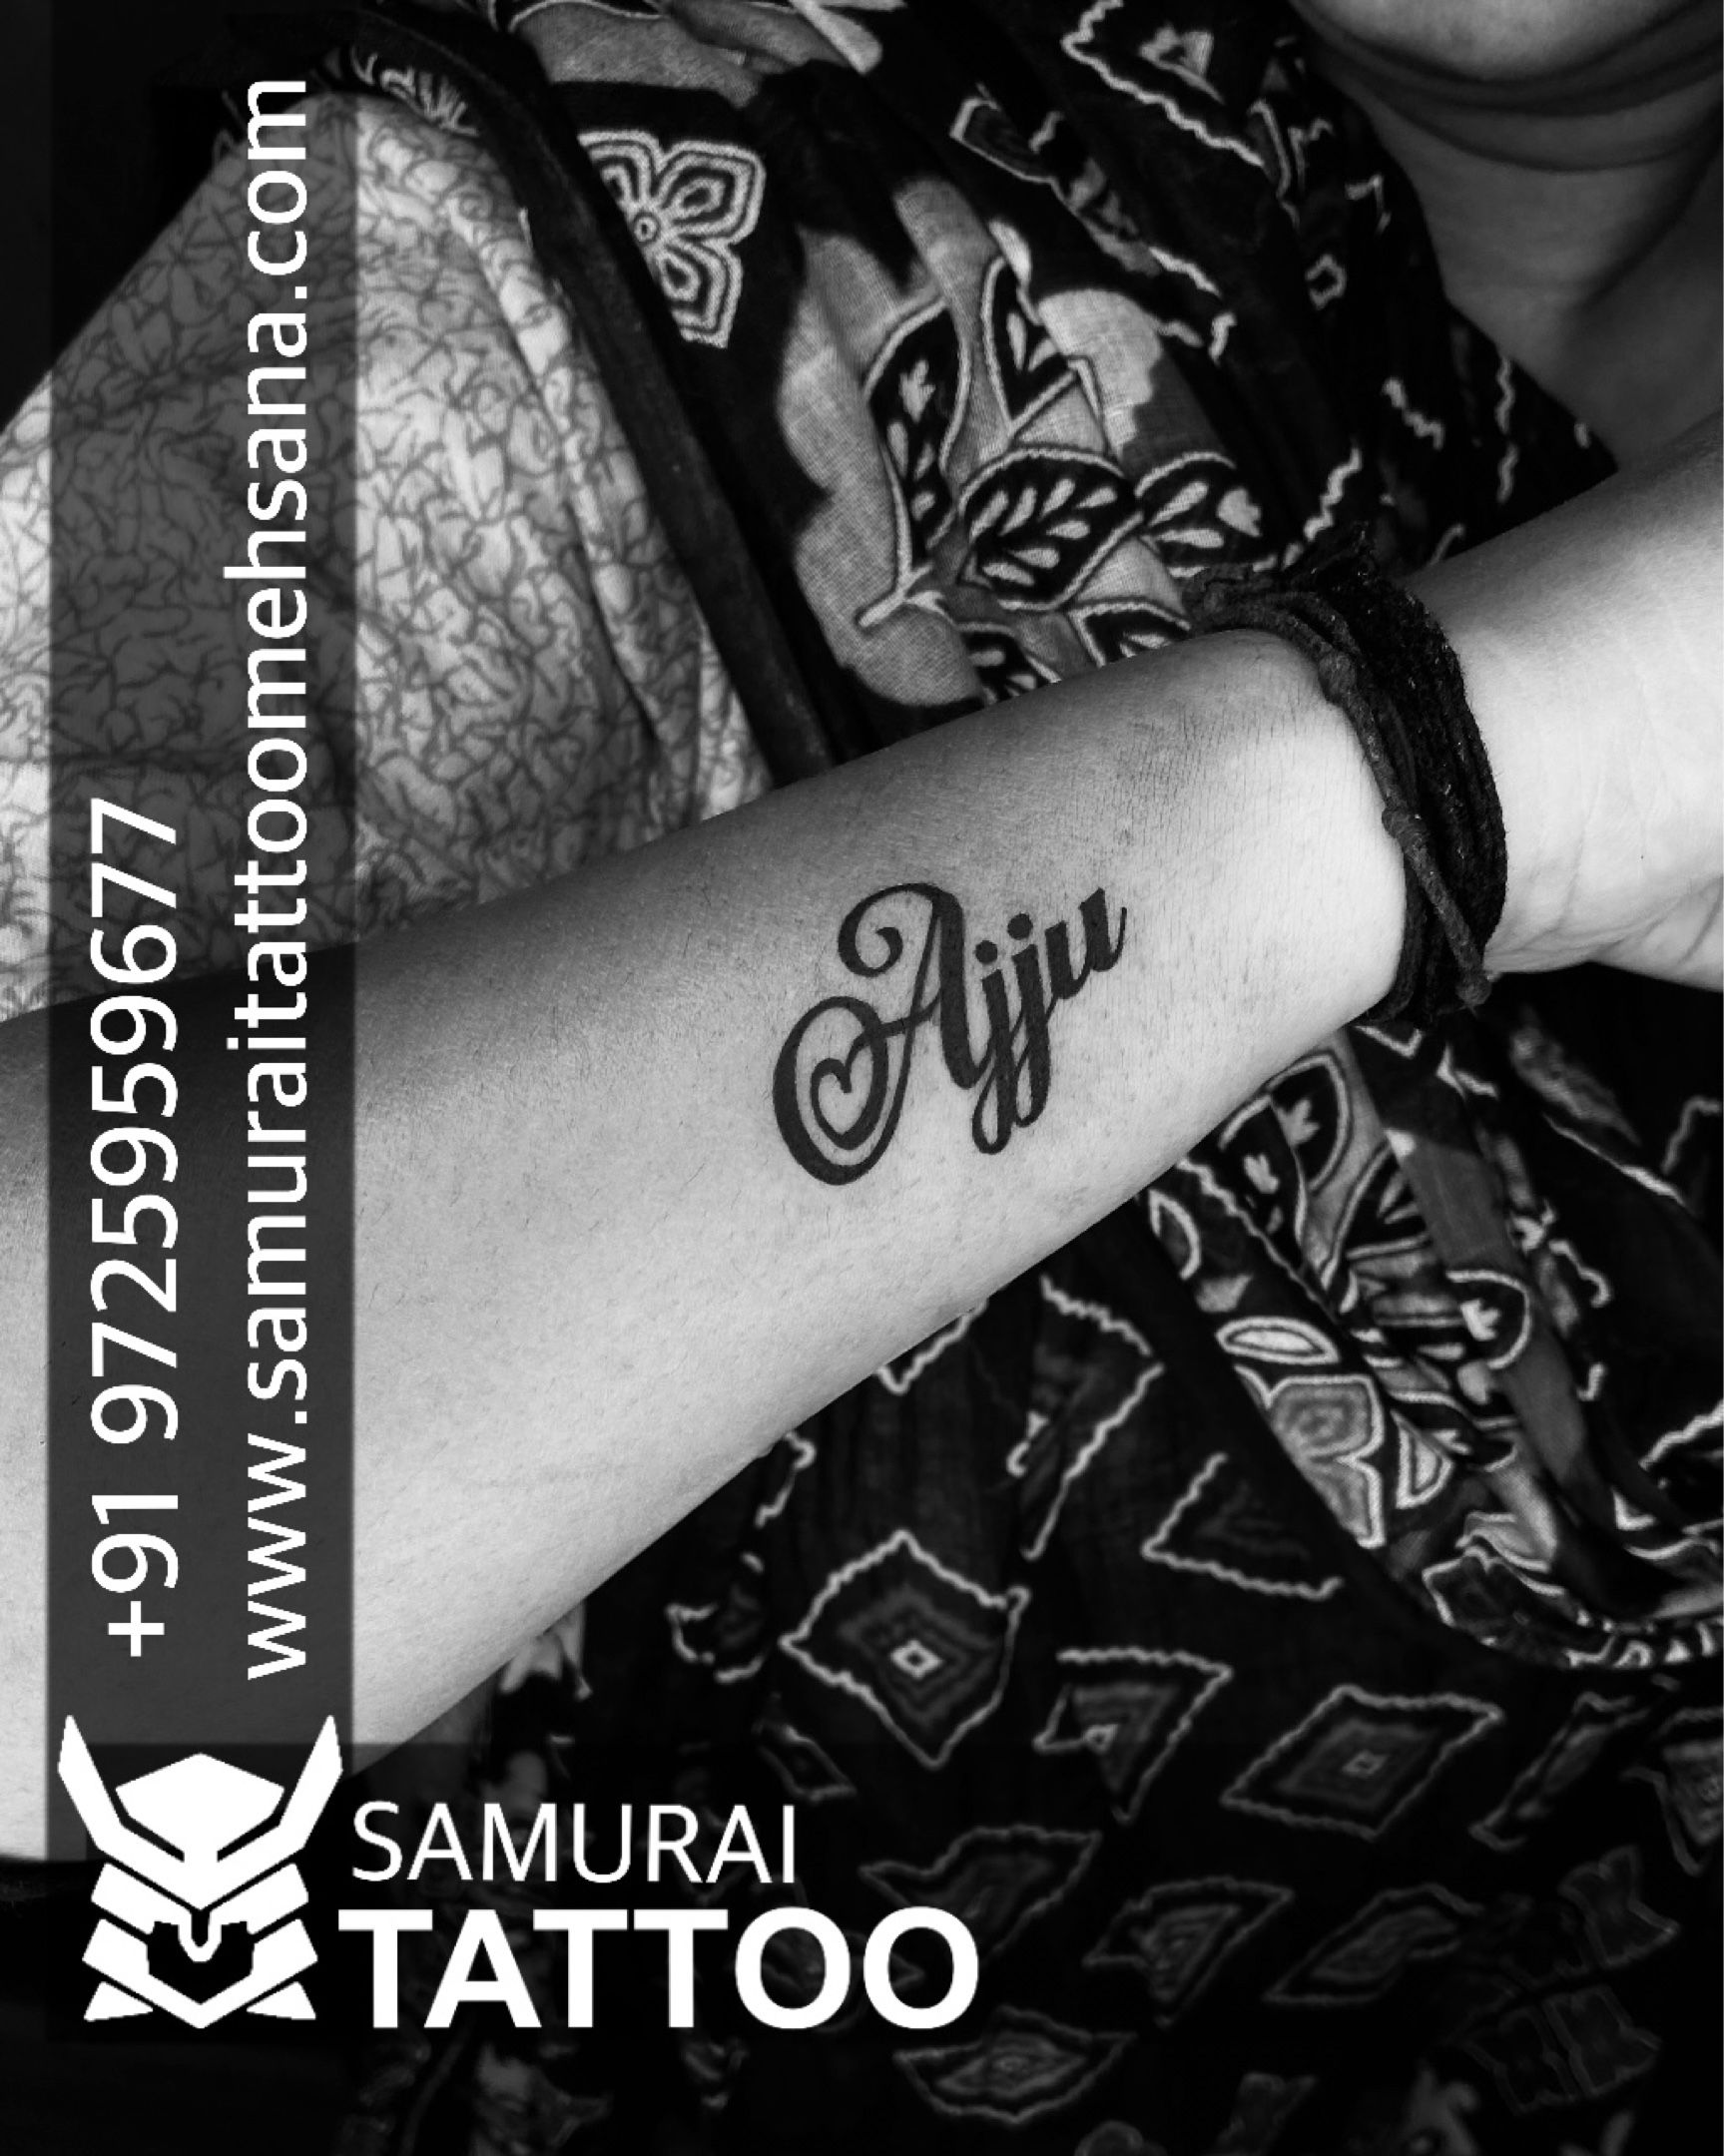 Share 83 about ajju name tattoo super hot  indaotaonec